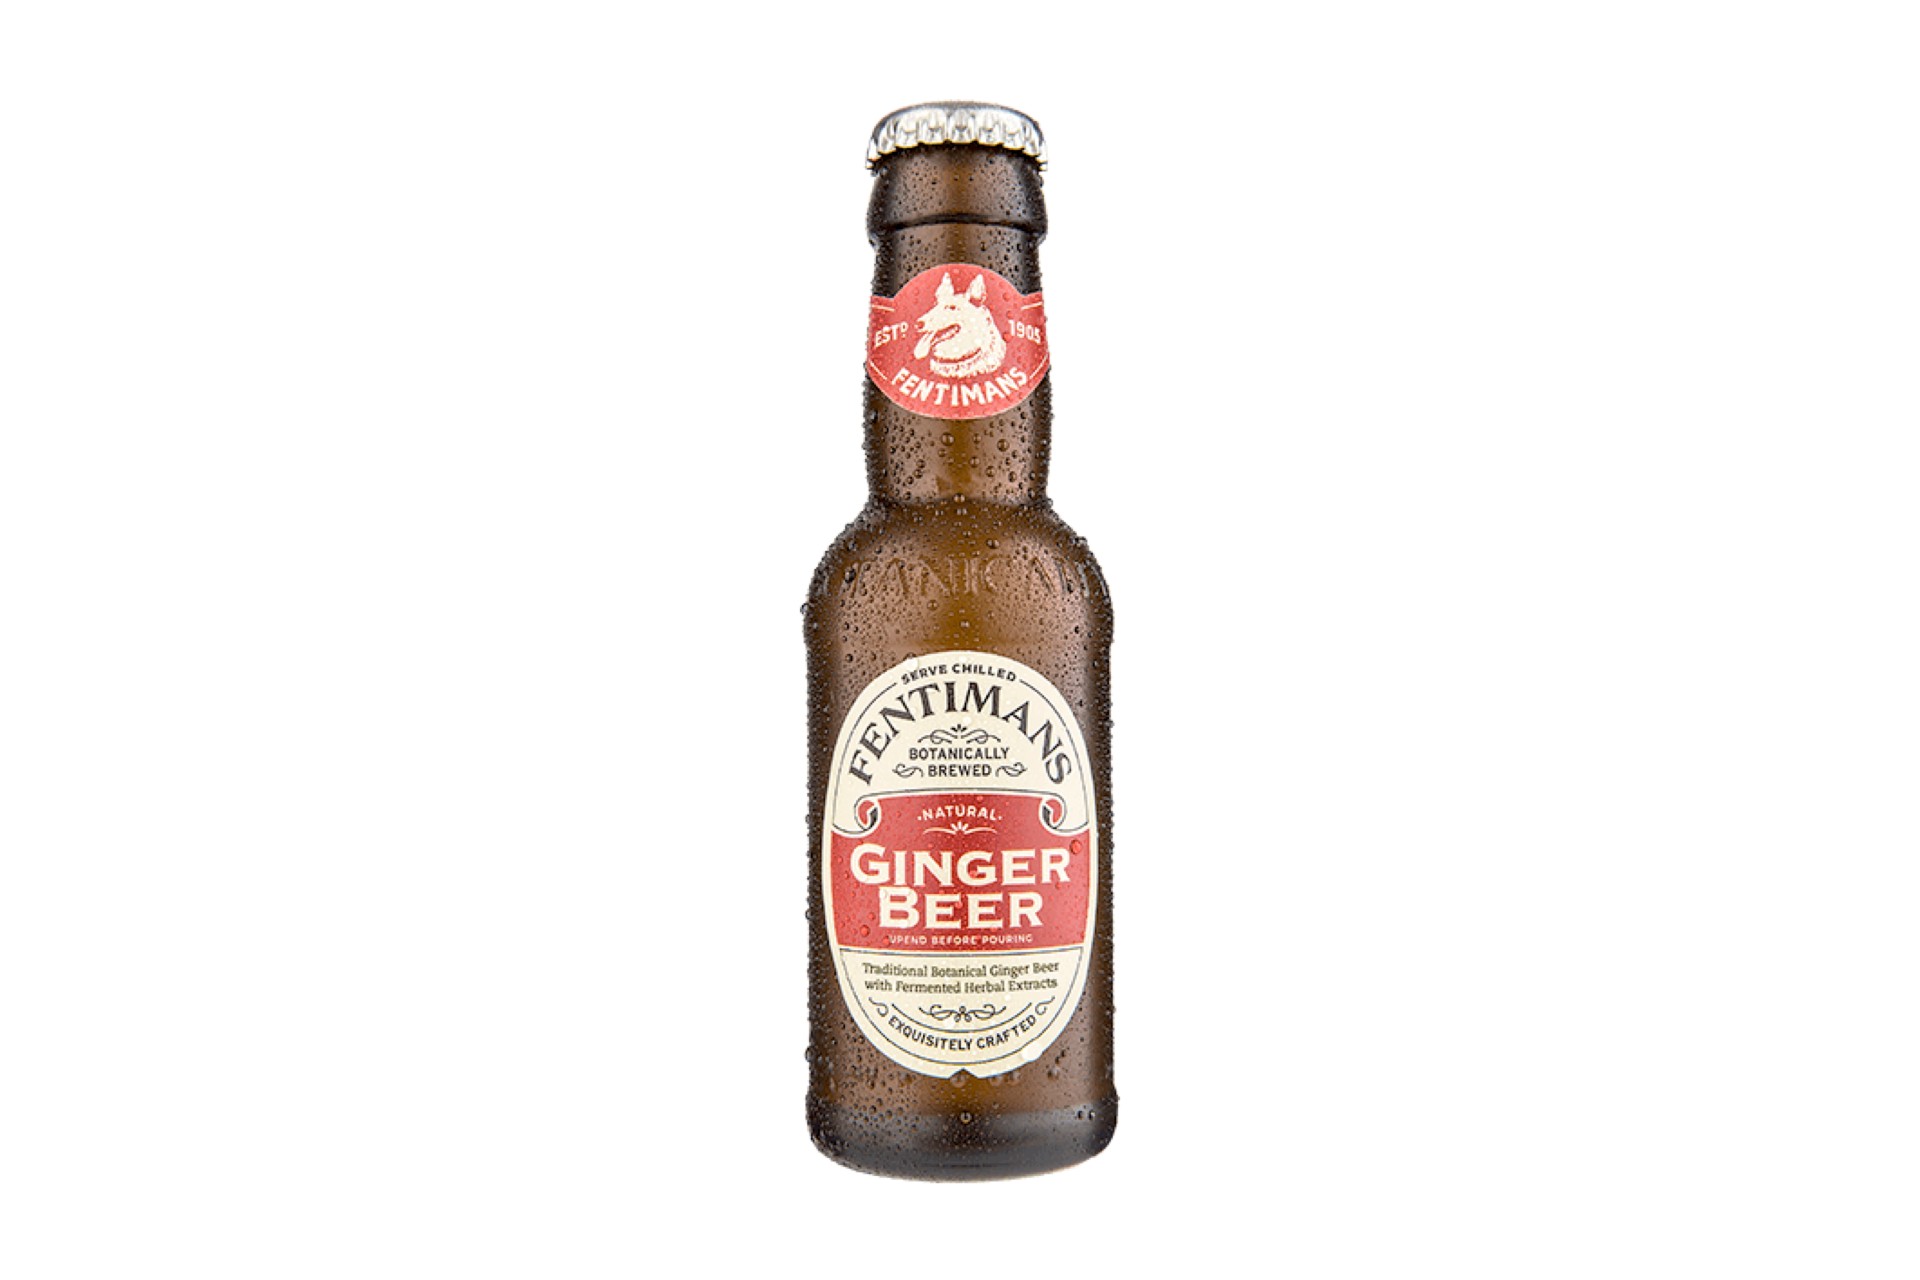 Ask a Bartender: Should I Use Ginger Ale or Ginger Beer in My Cocktail?